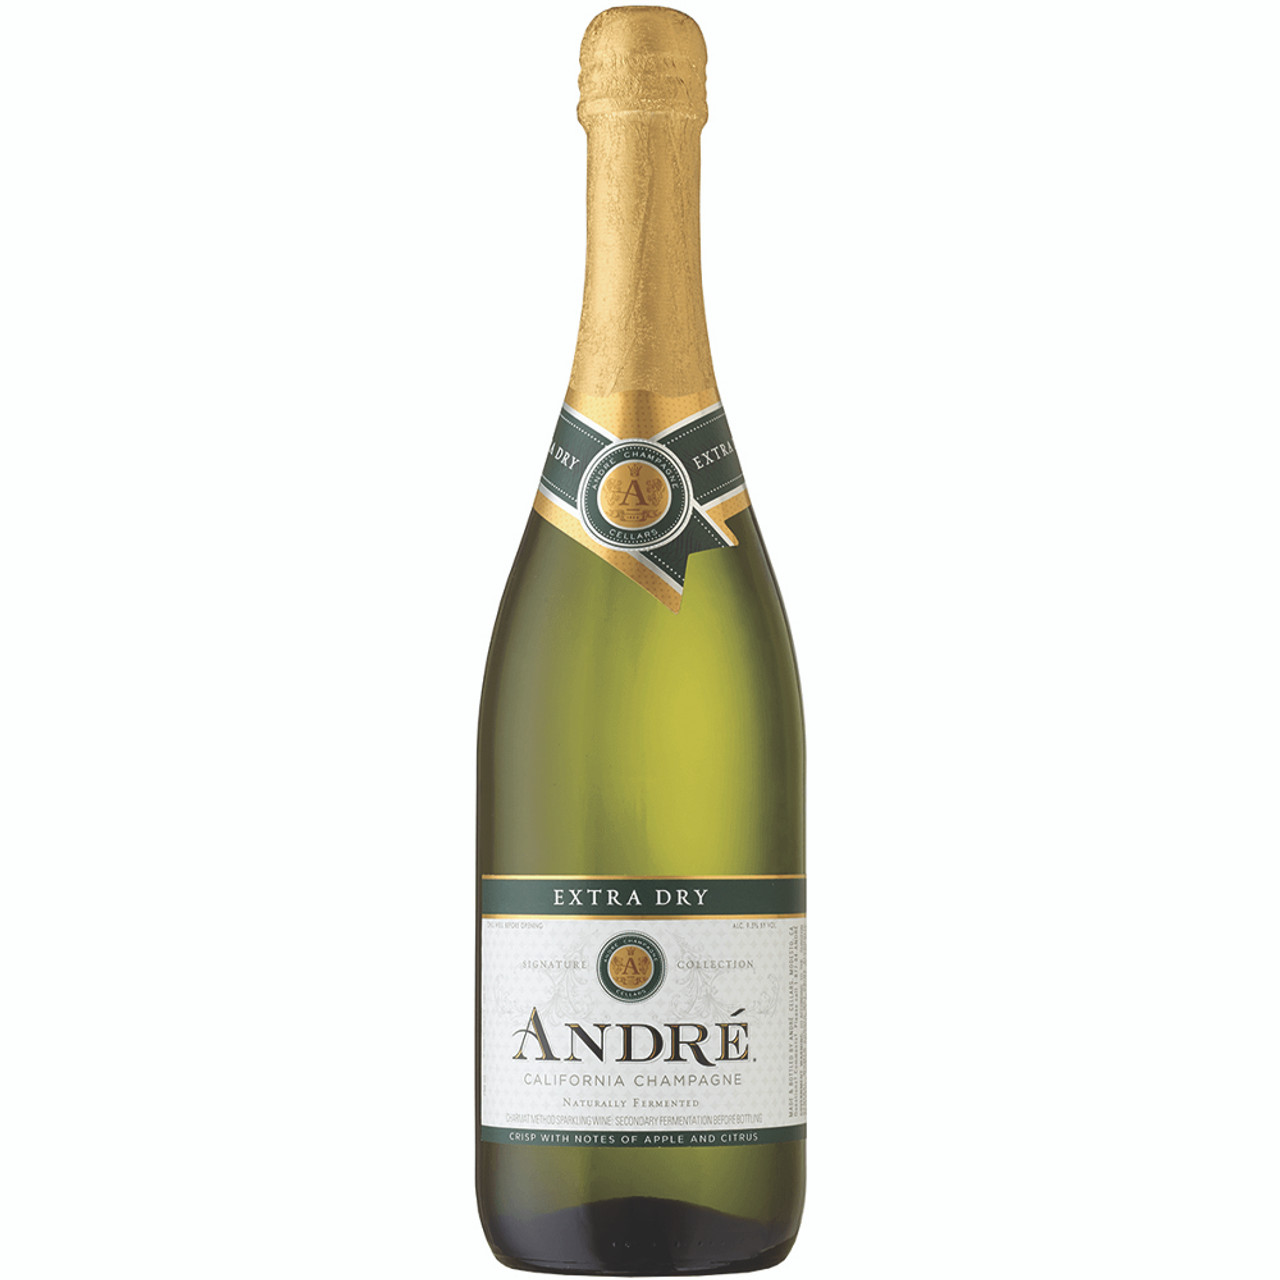 Andre Champagne Brut Sparkling White Wine, 750ml Bottle